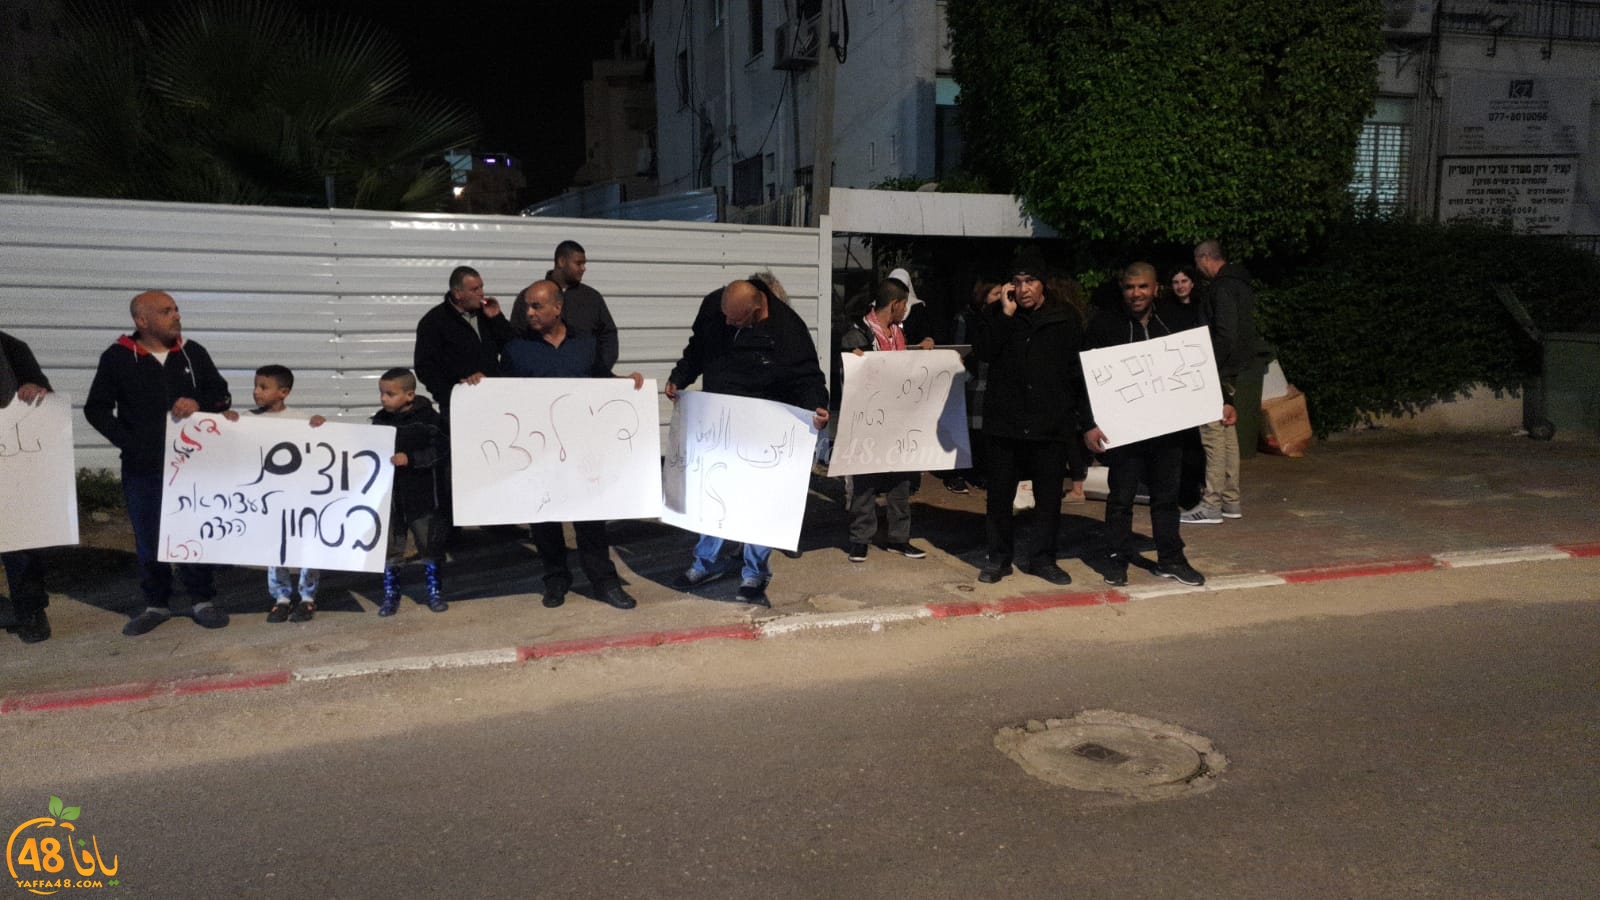  لليوم الثاني - أهالي مدينة اللد يتظاهرون ضد جرائم القتل أمام محطة الشرطة